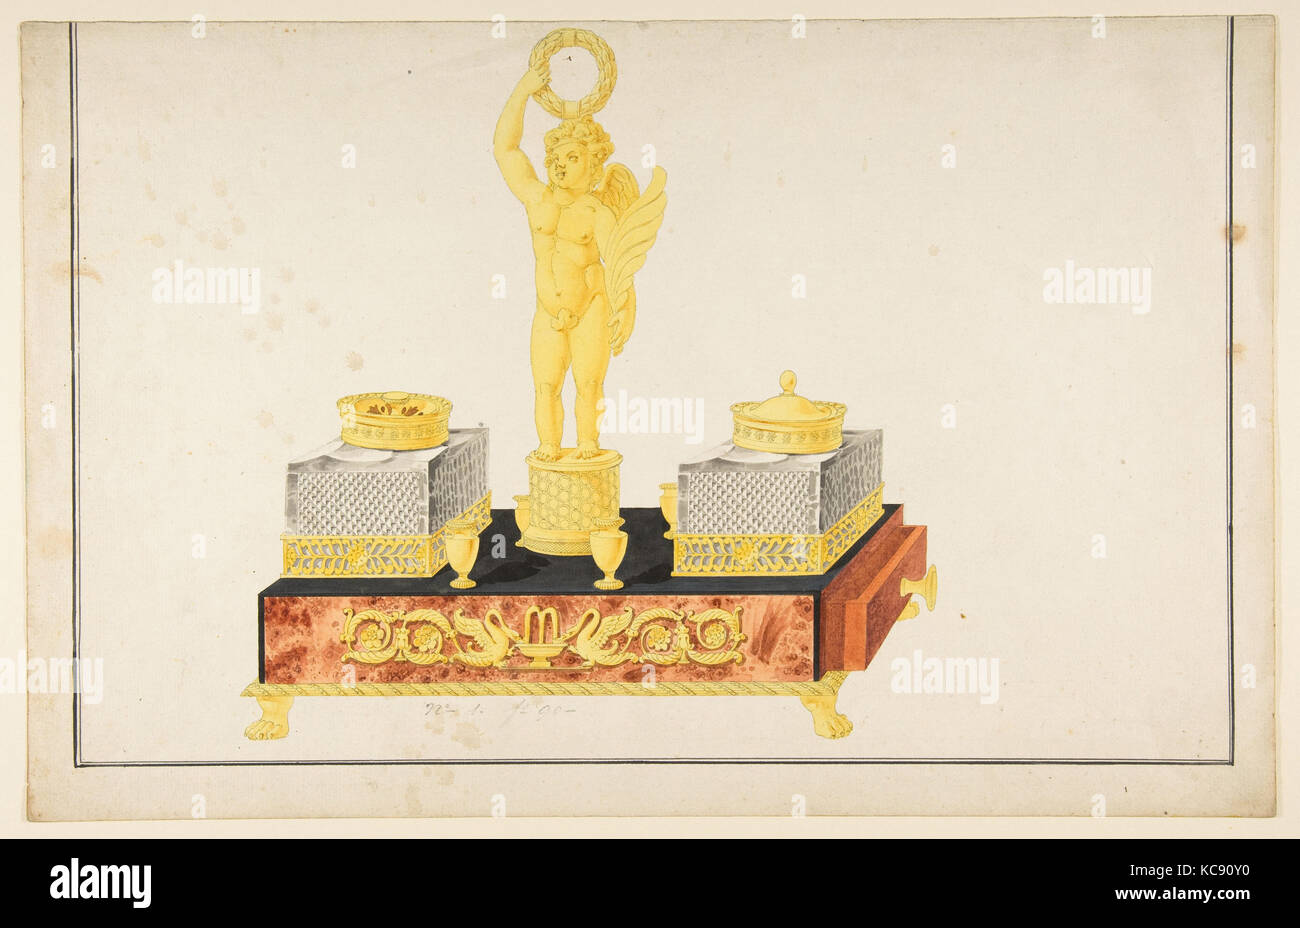 Conception d'un stand à la plume avec un Cupidon et deux Encriers, anonyme, le français, 19e siècle, 19e siècle Banque D'Images